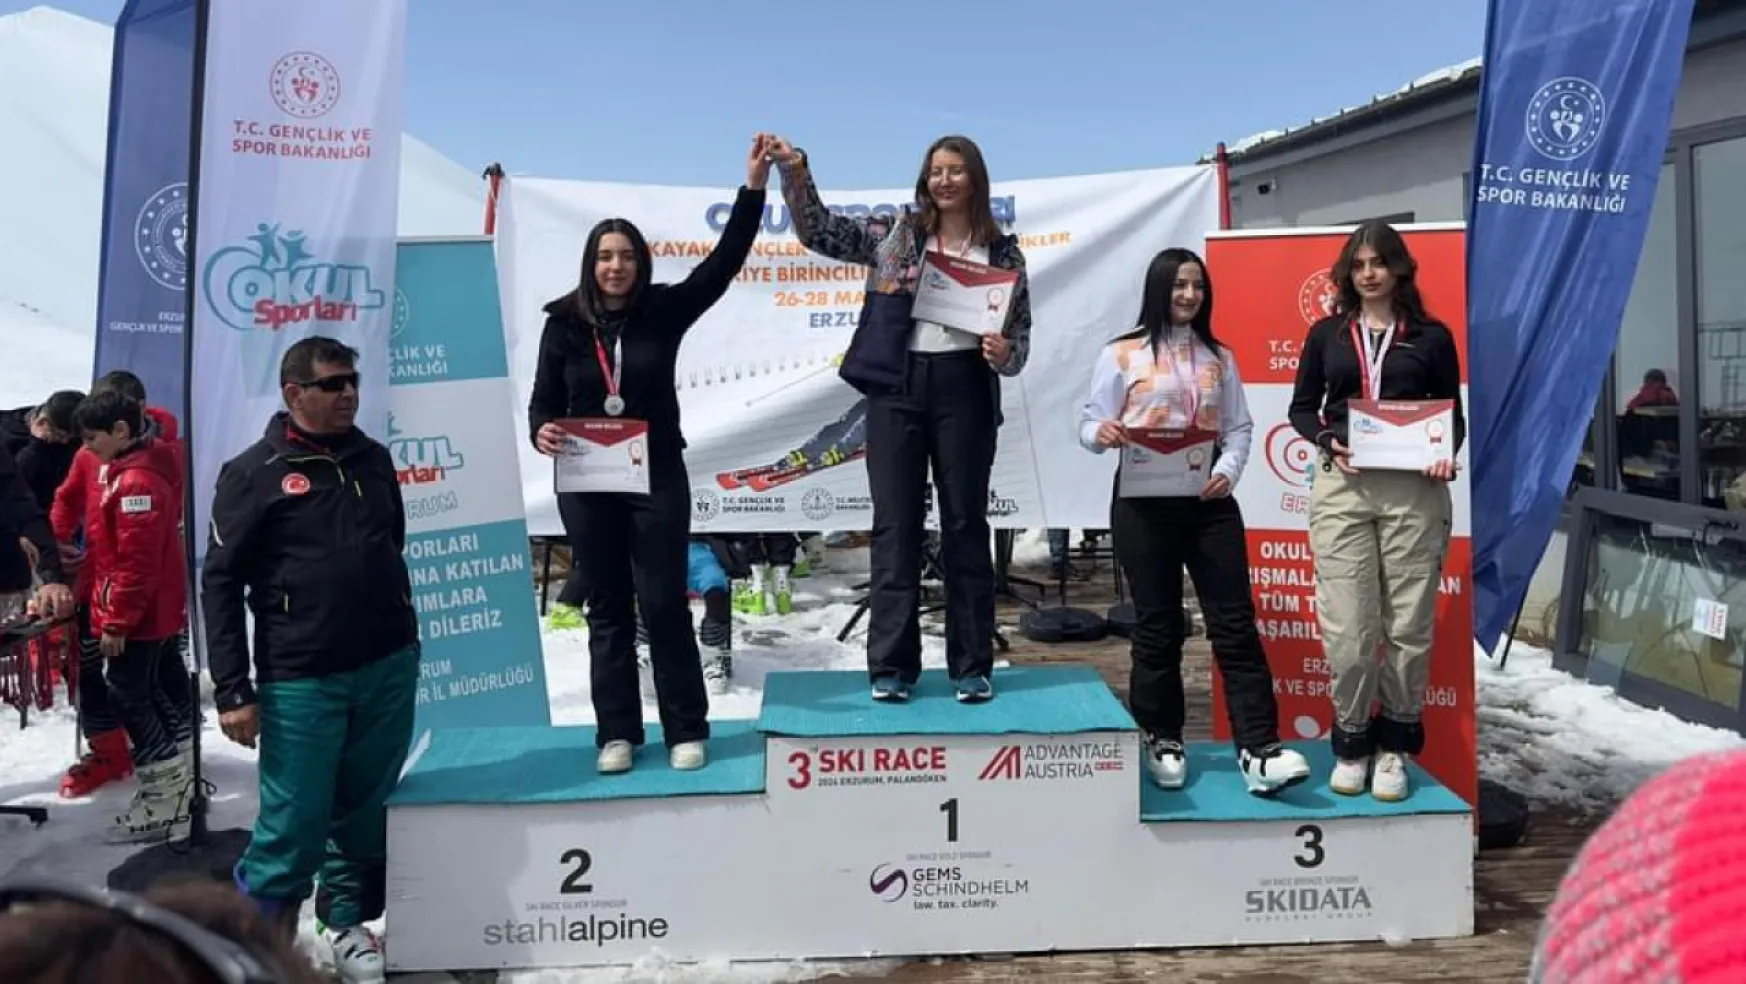 Snowboard Okul Sporları Türkiye Şampiyonasında mücadele eden Kayseri takımı 27 madalya kazandı.